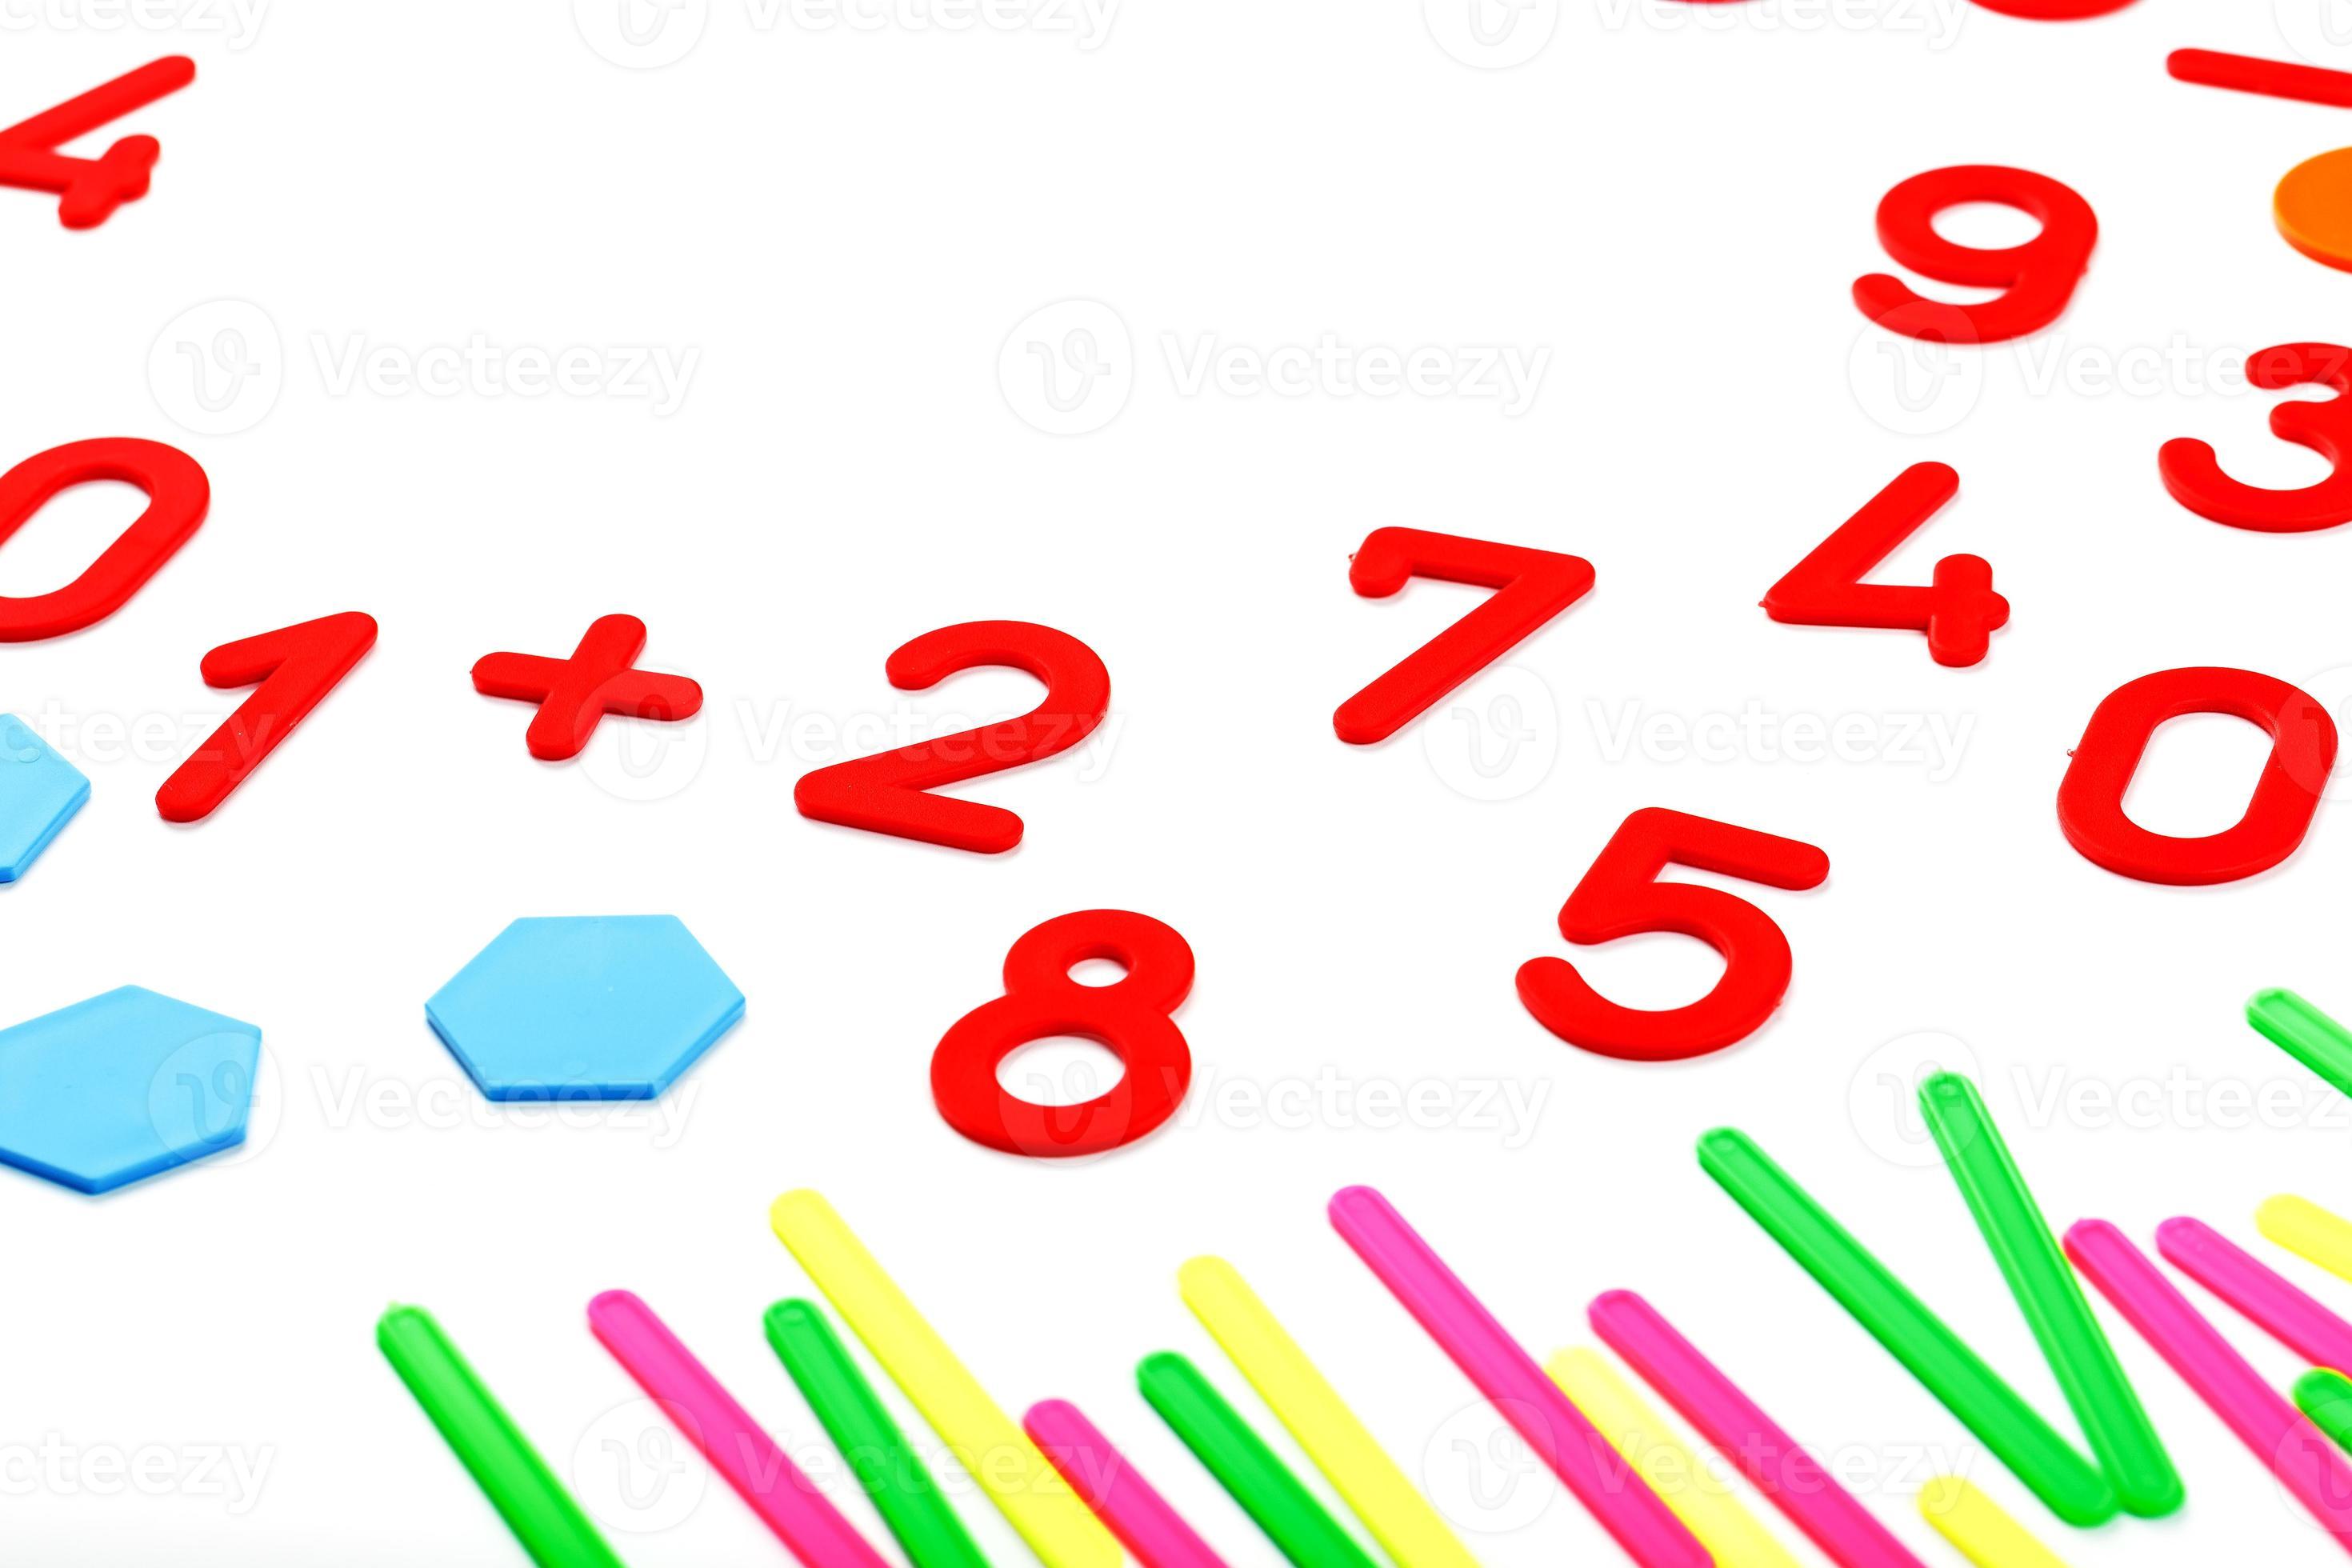 Số và hình nhựa đa màu trên nền trắng: Hãy đến với hình ảnh của những số và hình nhựa đa màu trên nền trắng. Những hình ảnh này sẽ giúp cho bạn hình dung và nhớ các con số và hình dạng một cách dễ dàng.